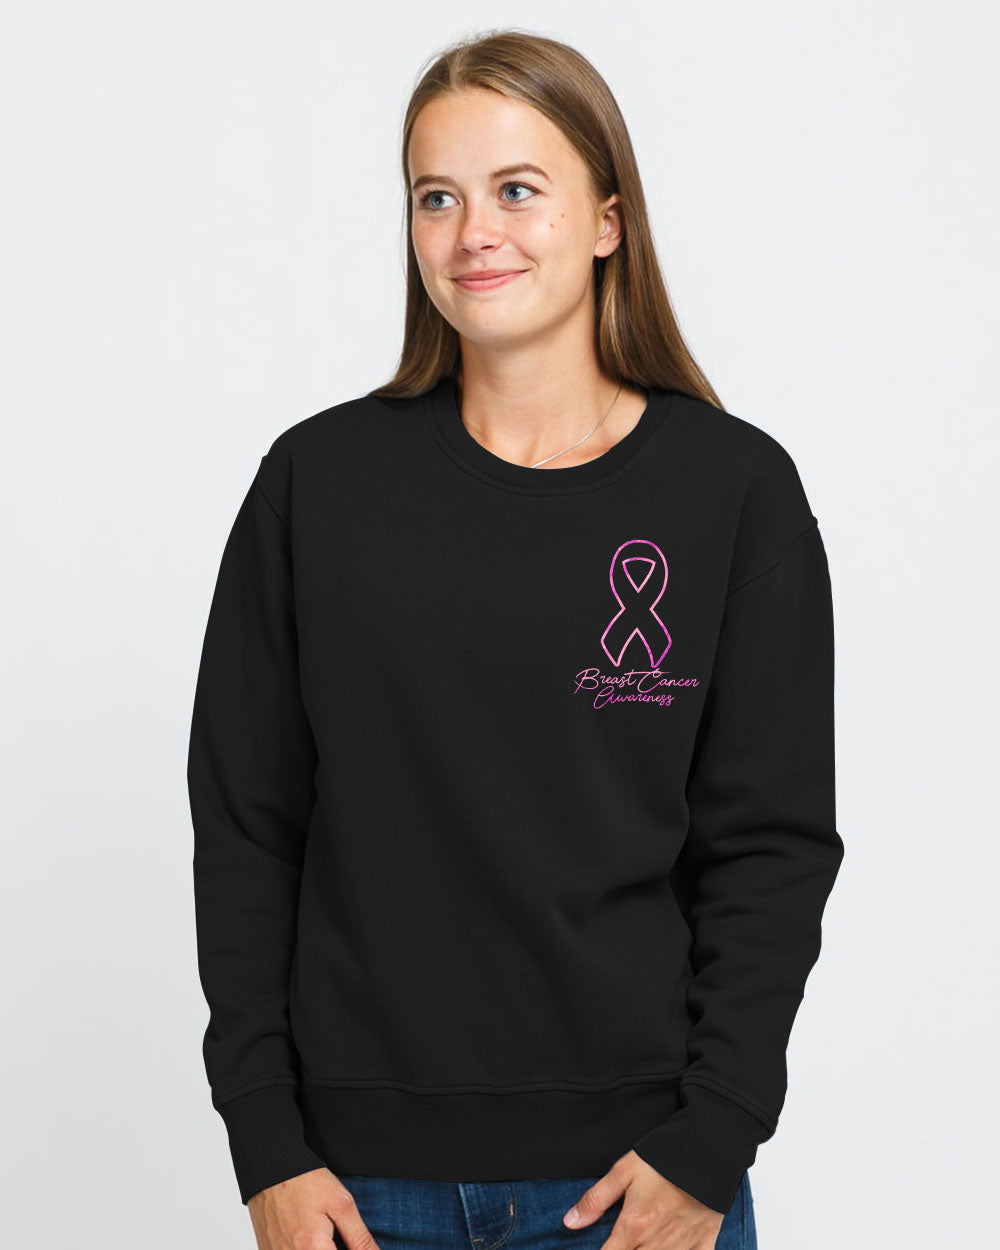 Wings Ribbon Spakle Women's Breast Cancer Awareness Sweatshirt